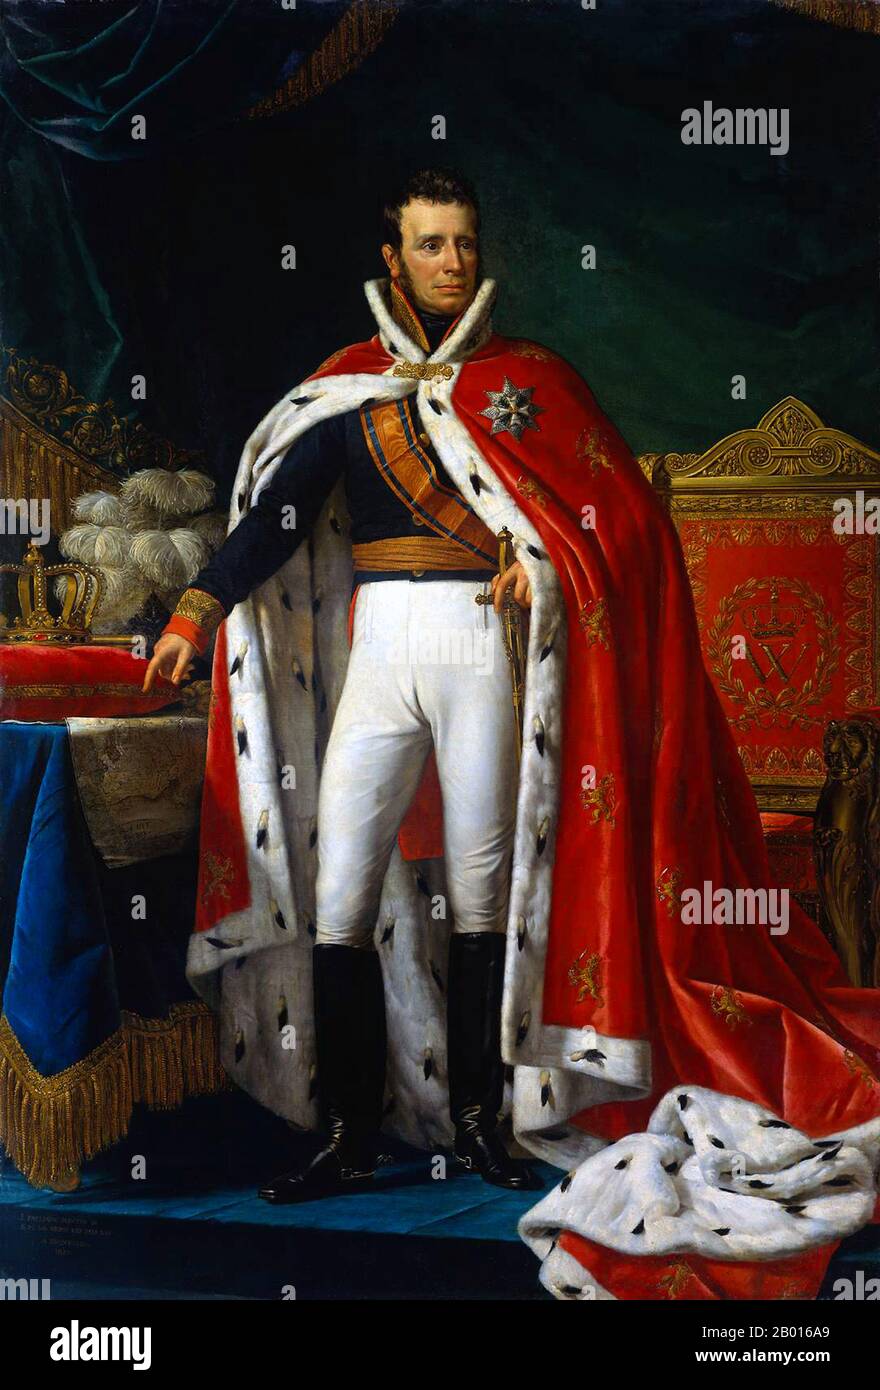 Paesi Bassi: Guglielmo i (24 agosto 1772 - 12 dicembre 1843), Re dei Paesi Bassi (r. 1815-1840). Dipinto a olio su tela di Joseph Paelinck (1781-1839), 1819. Guglielmo i era il Principe d'Orange, il Granduca di Lussemburgo e il Re dei Paesi Bassi. Figlio dell'ultimo Stadtholder della Repubblica Olandese, divenne il governatore del Principato di Nassau-Orange-Fulda dopo un accordo con Napoleone nel 1803, che lo depose nel 1806. Gli fu chiesto di diventare il Principe Sovrano dei Paesi Bassi Uniti dopo la sconfitta di Napoleone nel 1813, e si proclamò re nel 1815. Foto Stock